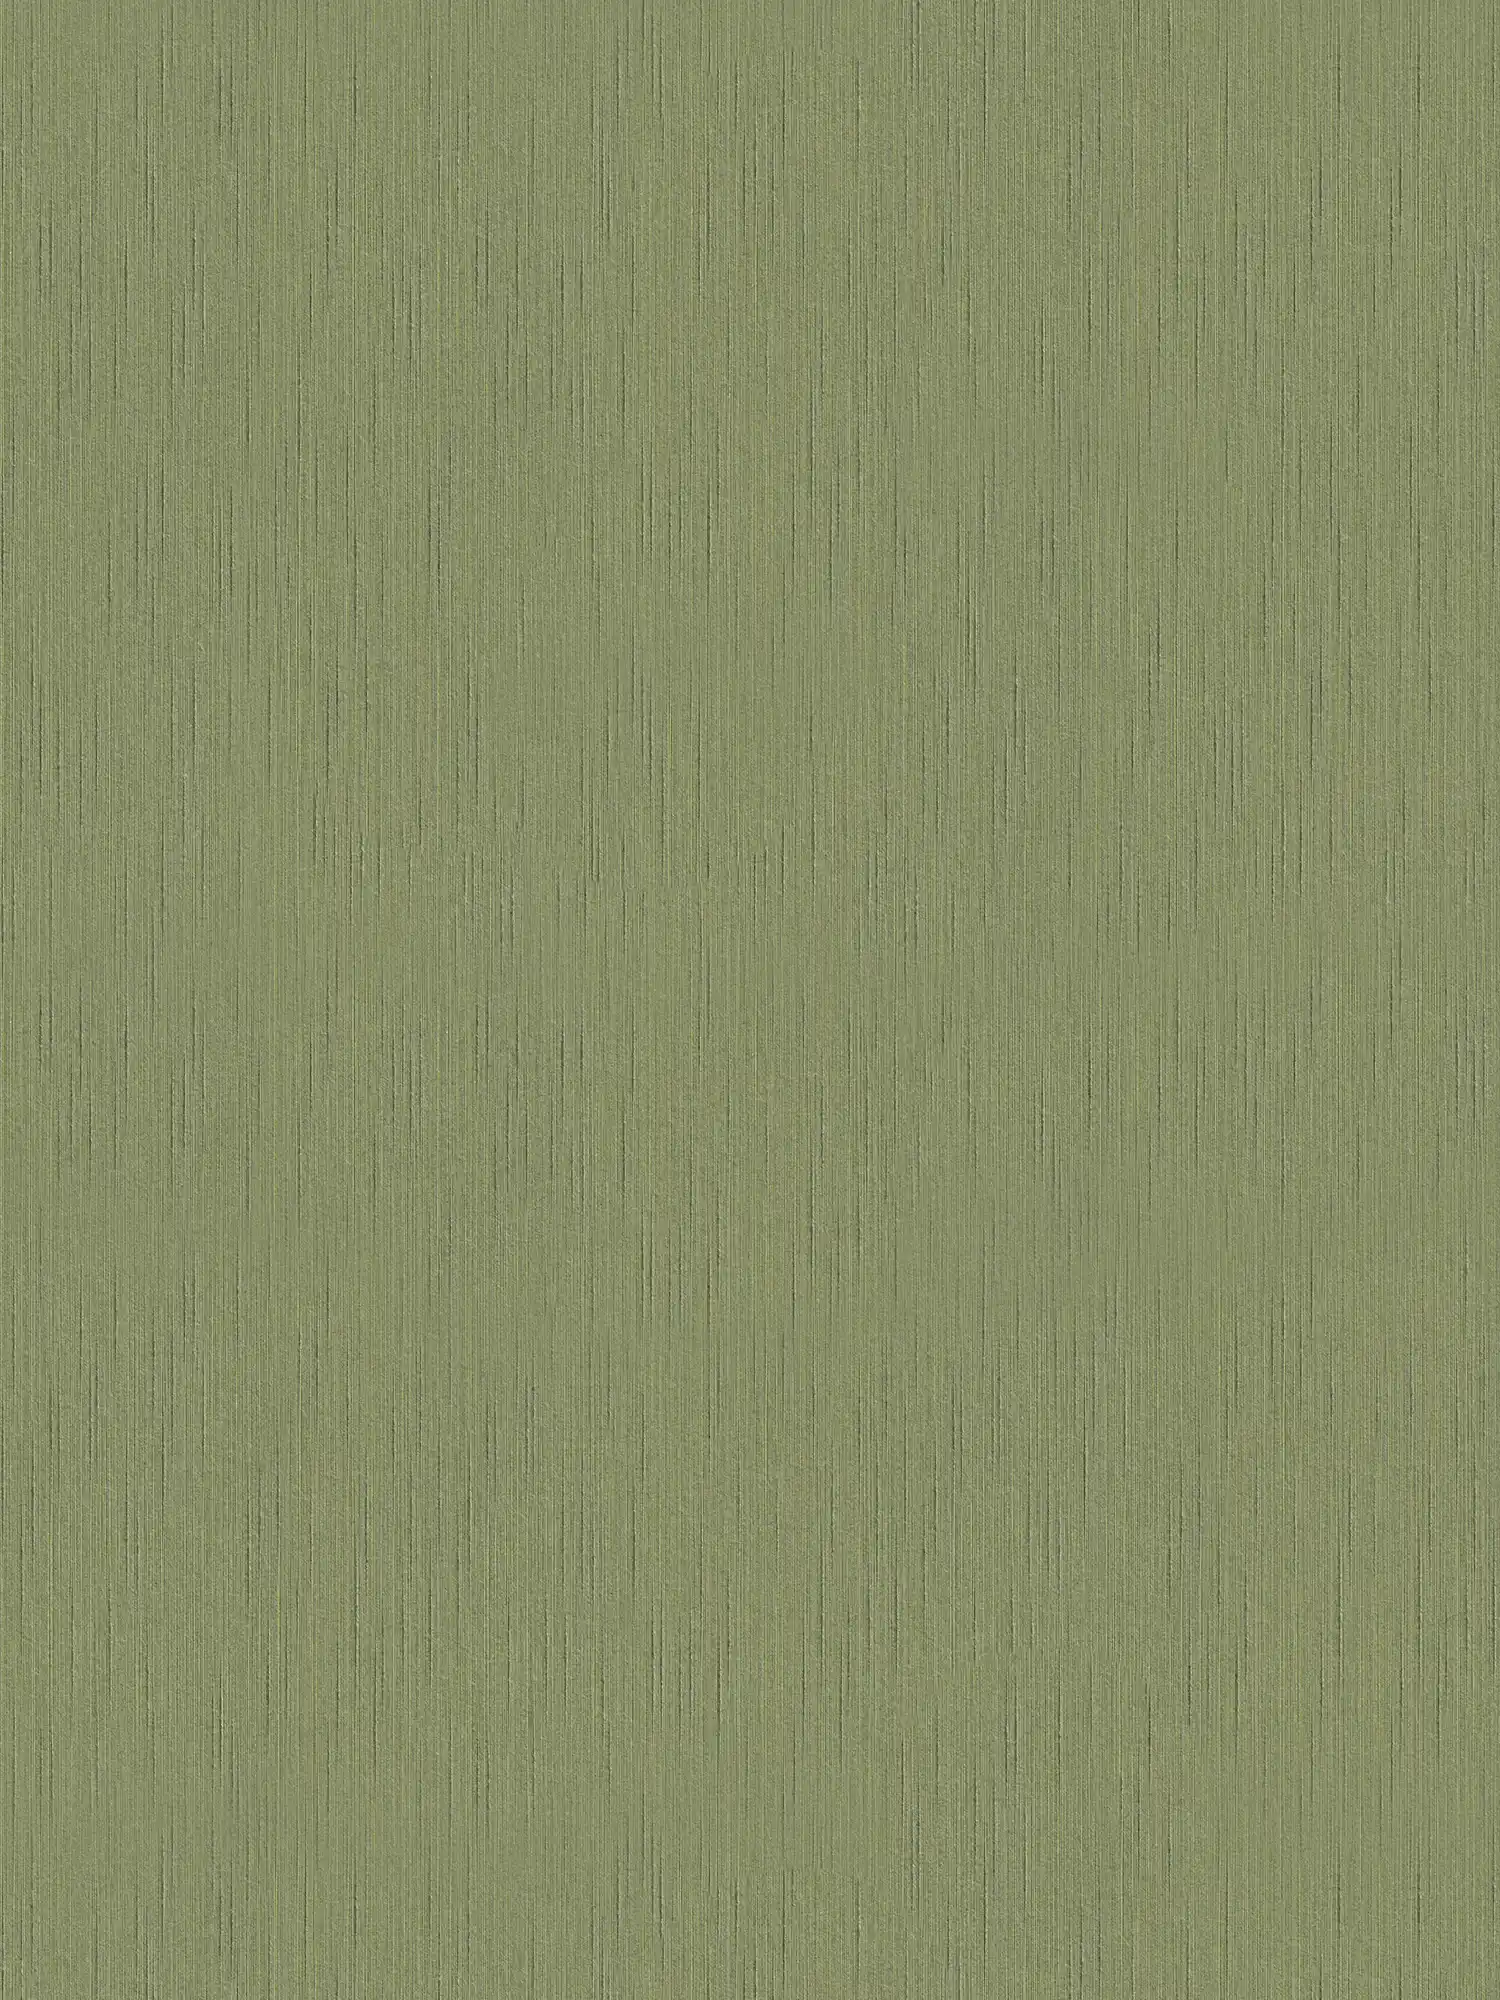 Donkergroen vliesbehang met gevlekte structuur - groen
